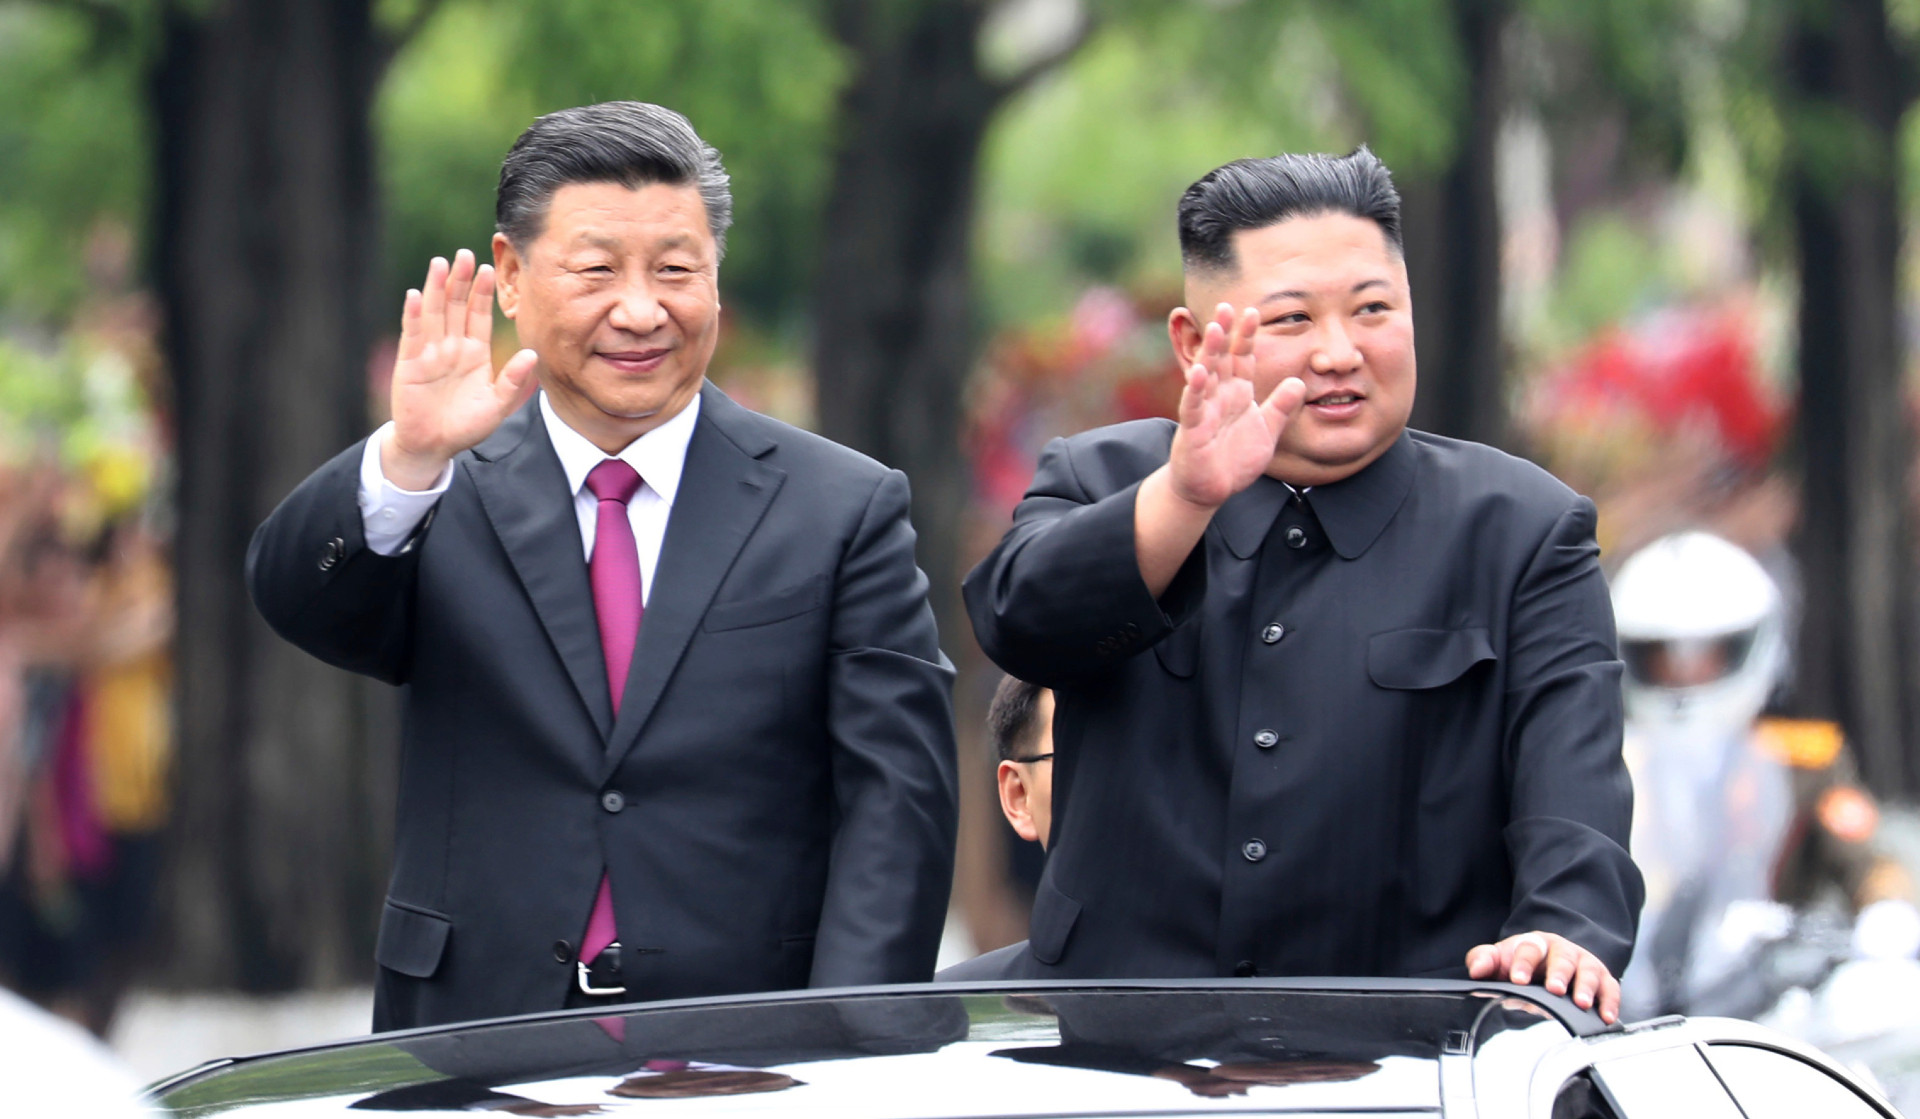 Չինաստանի նախագահը պատրաստակամություն է հայտնել զարգացնել հարաբերությունները Հյուսիսային Կորեայի հետ